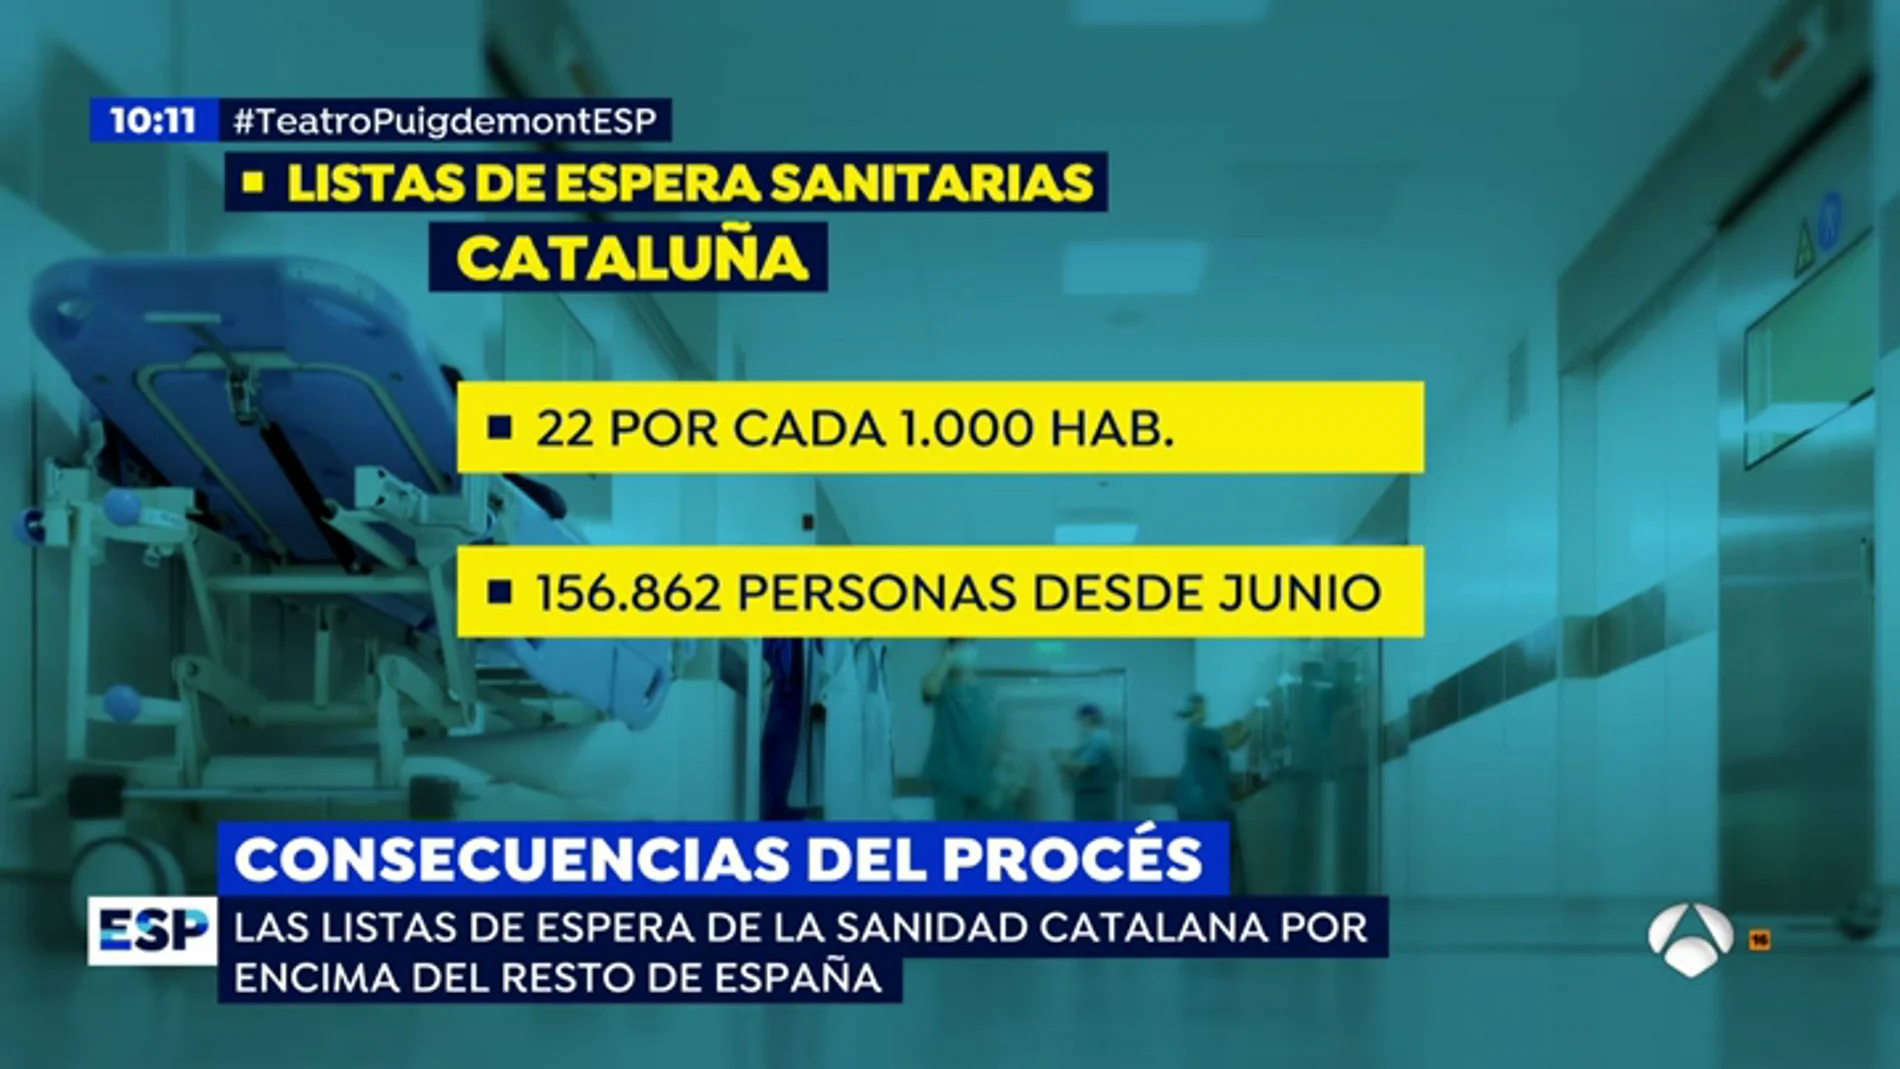 EP sanidad catalana